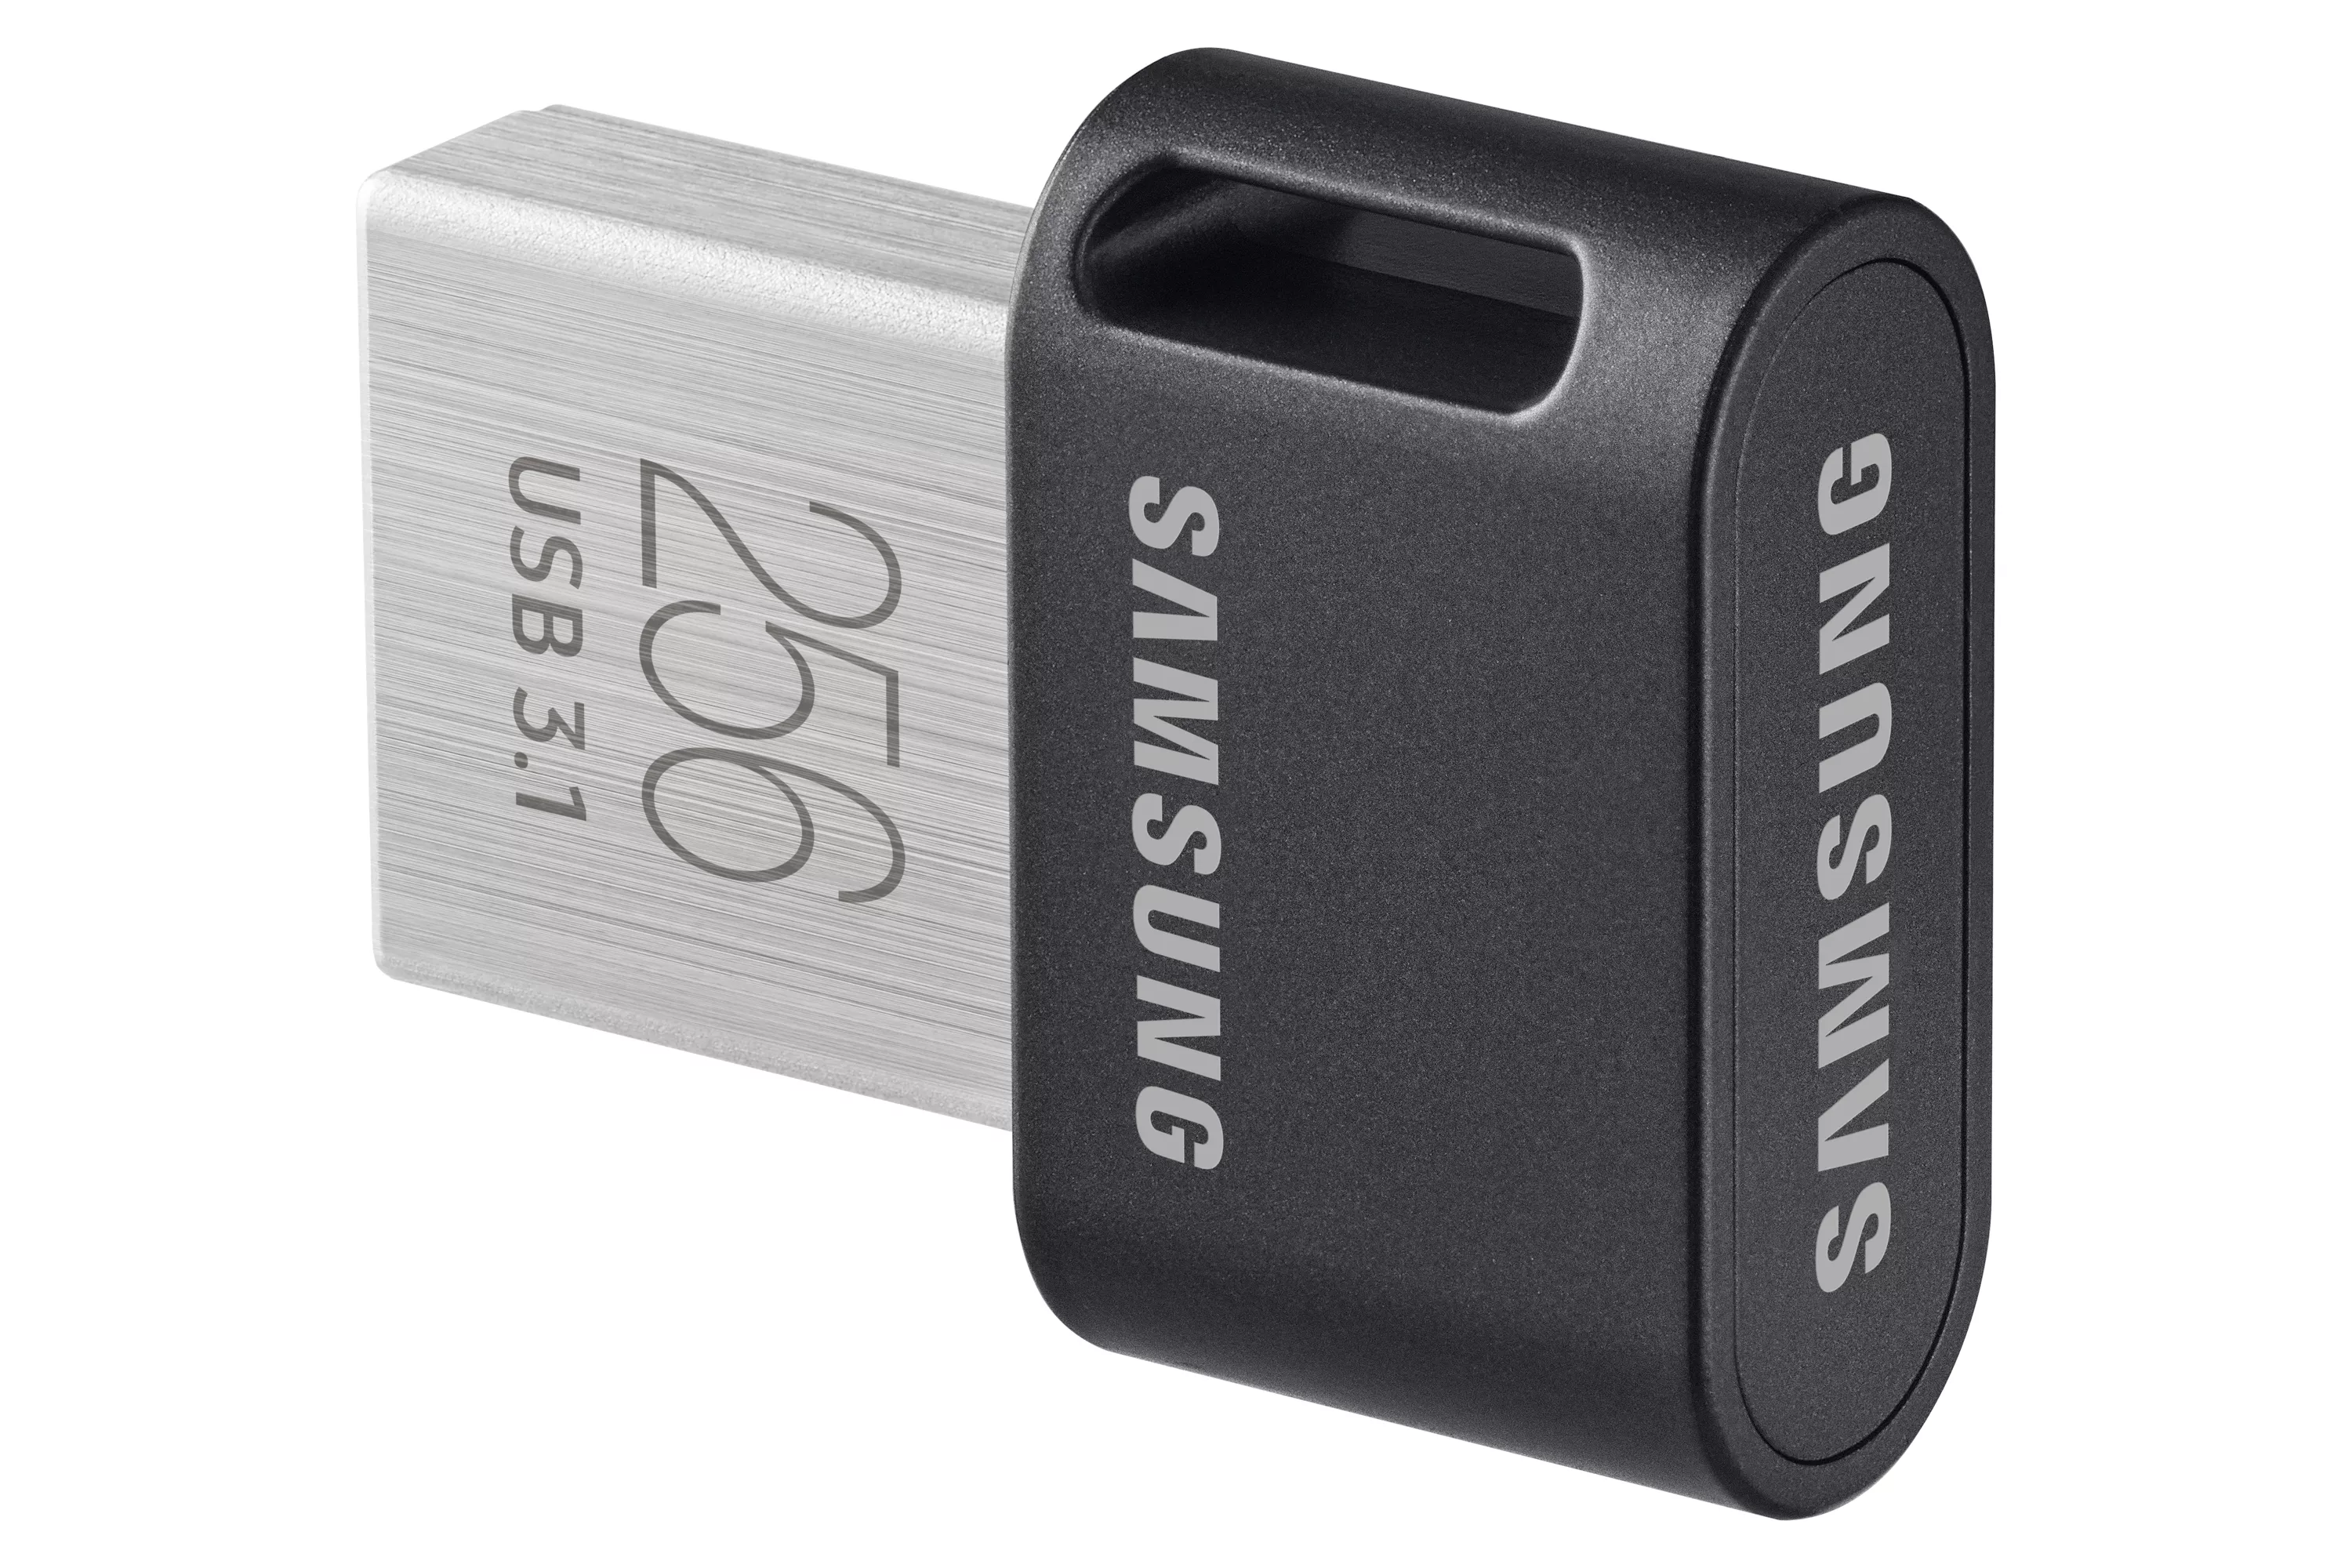 Achat SAMSUNG FIT PLUS 256Go USB 3.1 sur hello RSE - visuel 3